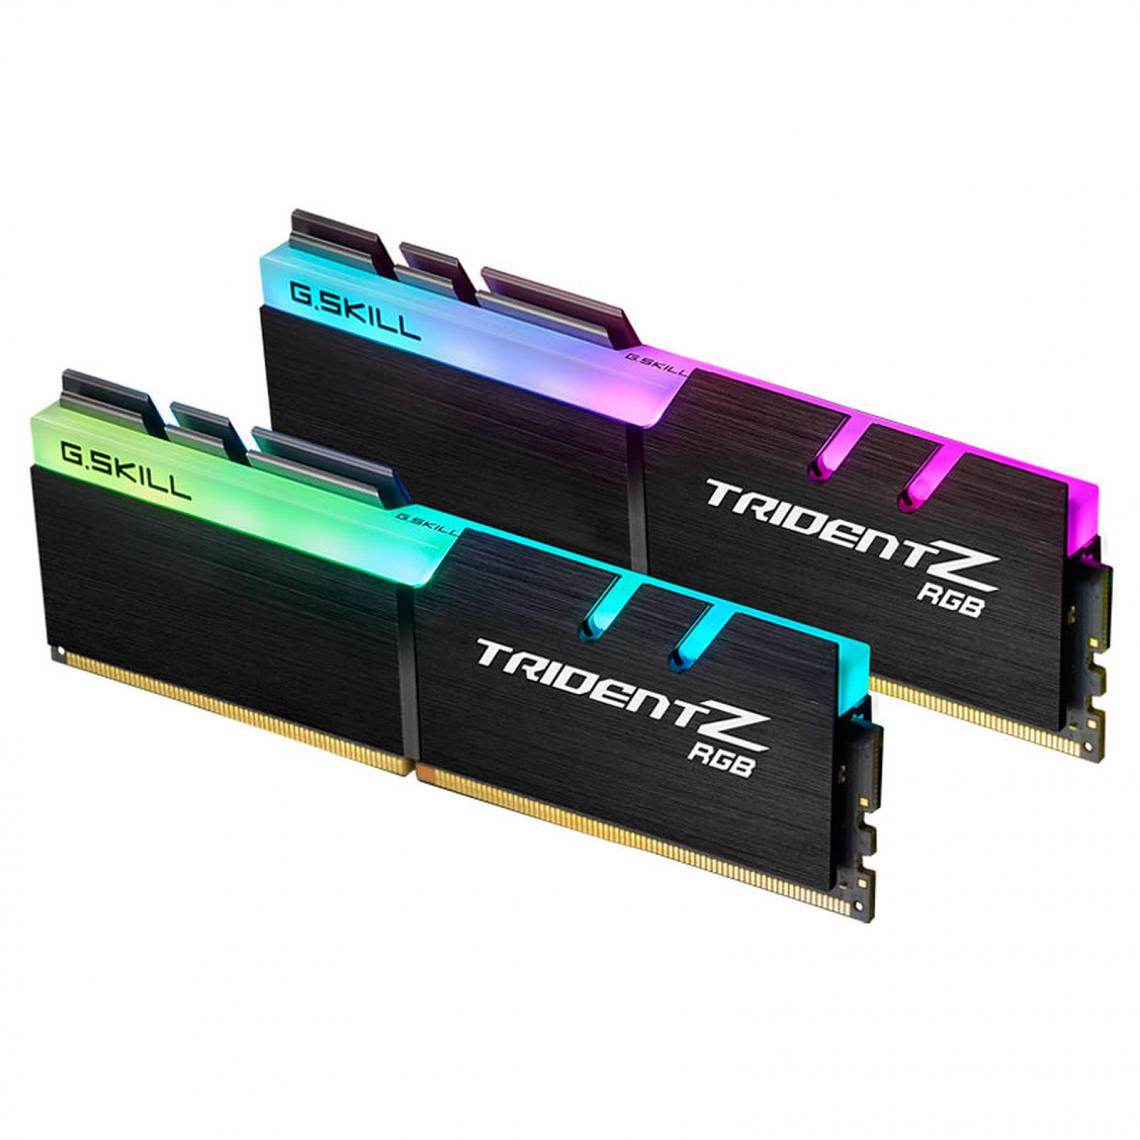 Gskill - Trident Z RGB 64 Go (2 x 32 Go) DDR4 3200 MHz CL16 - RAM PC Fixe